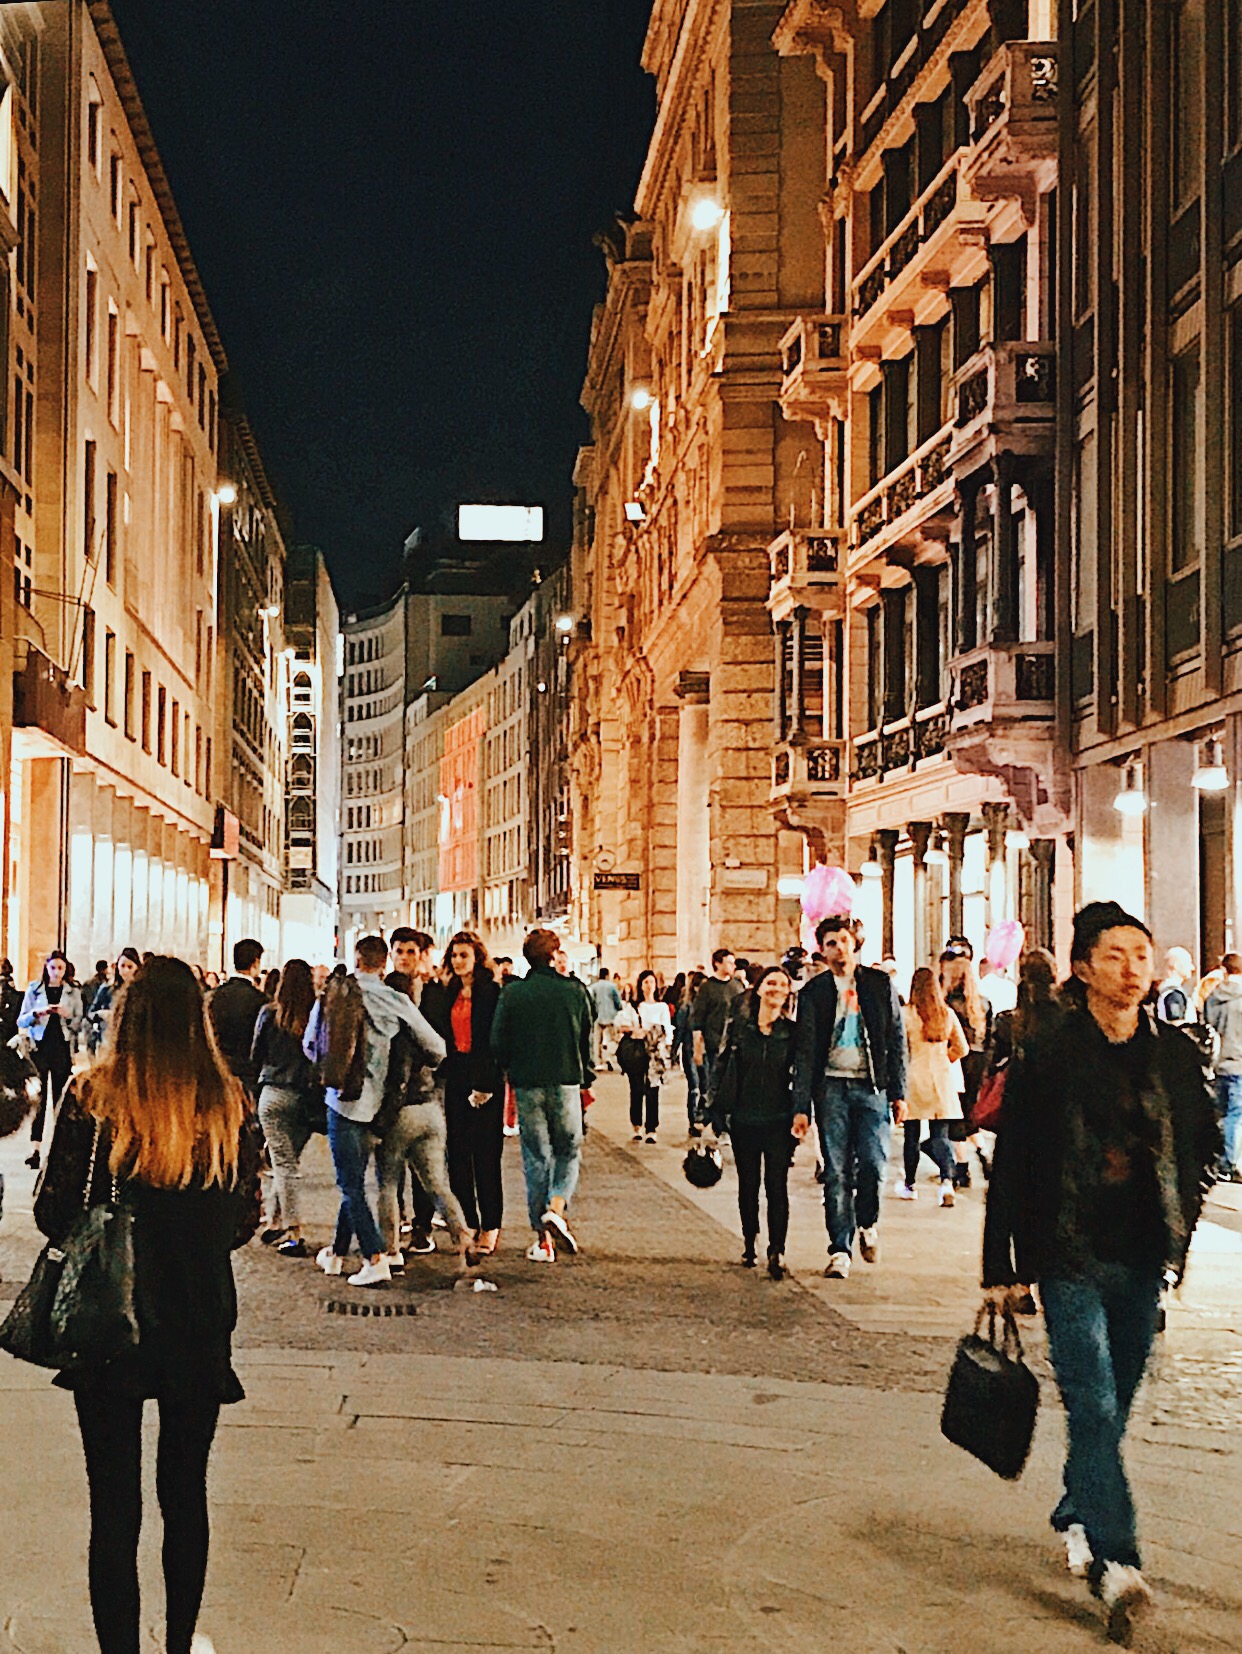 Milano, la moda e gli eventi. Sbagliamo qualcosa